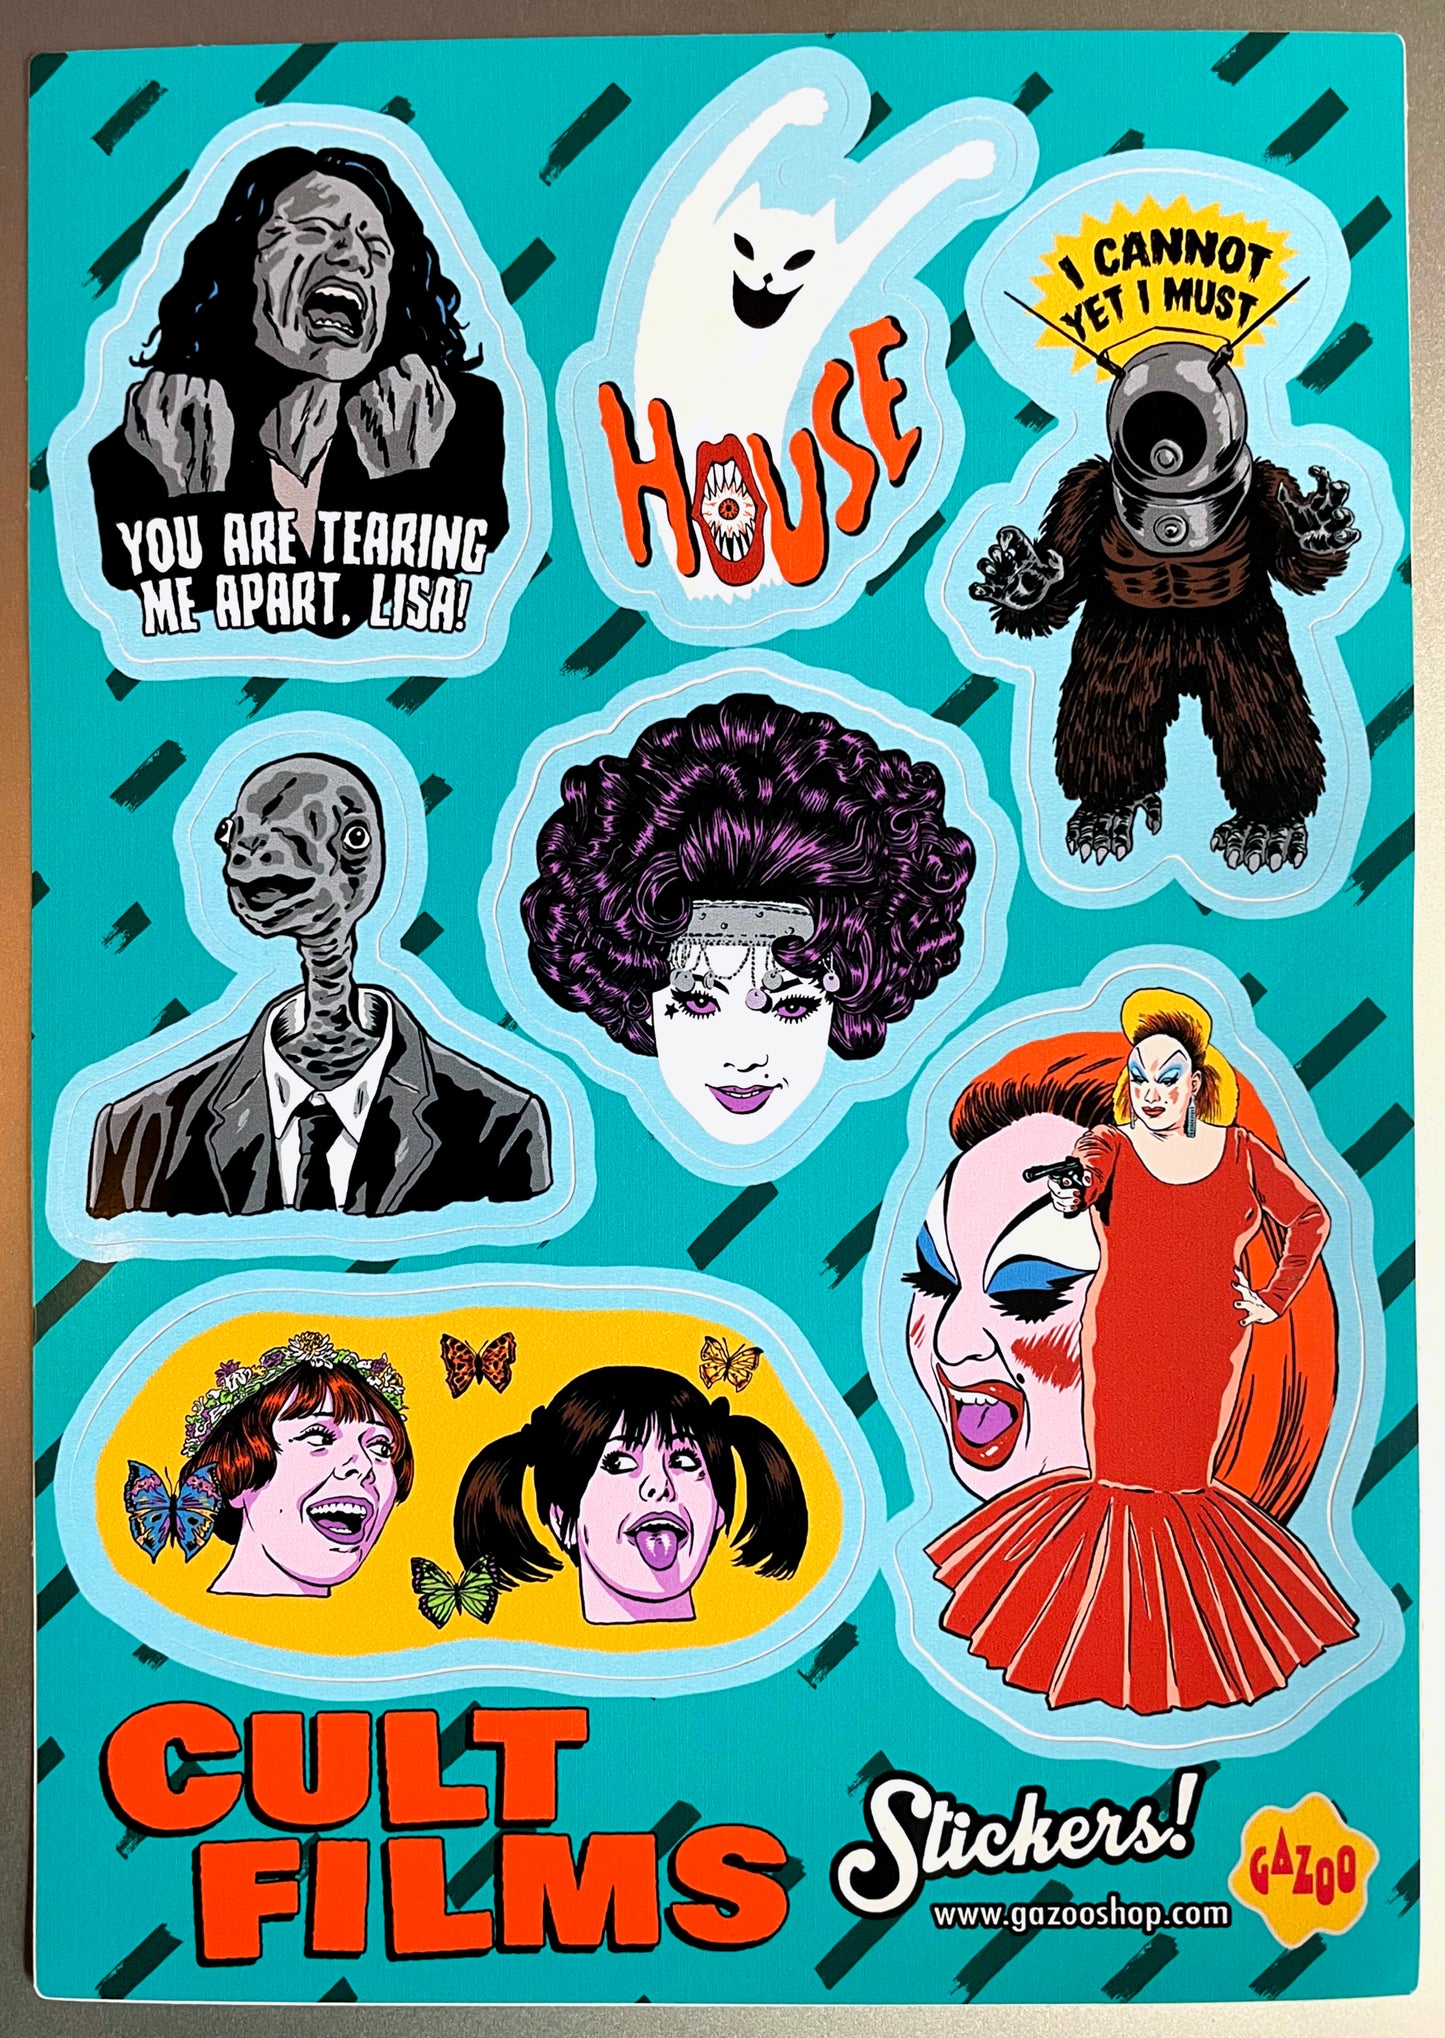 CULT FILMS (SET 1) Sticker Sheet